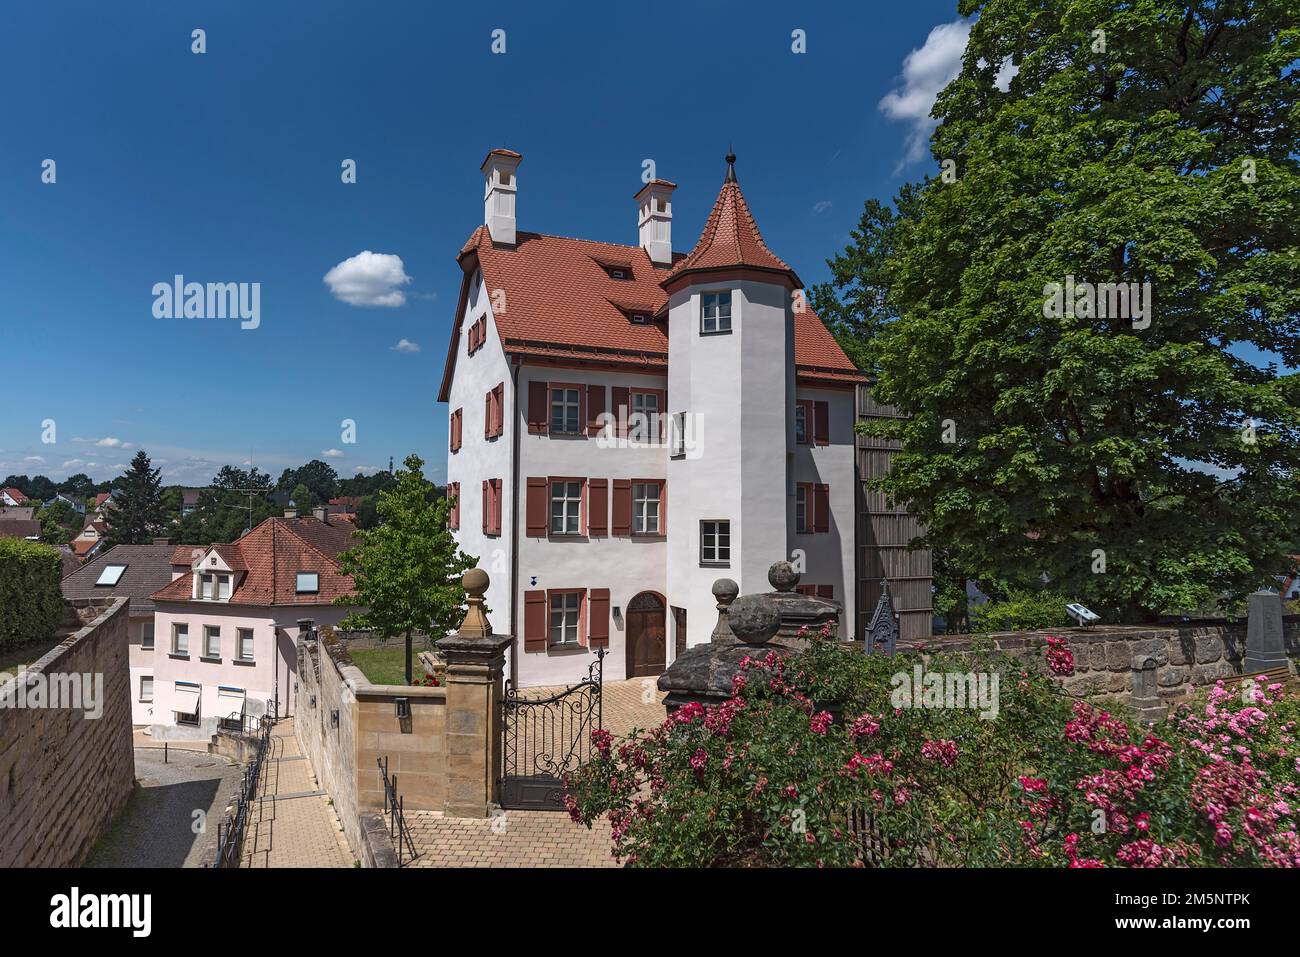 Weiße Burg, erbaut 1471, heute als Museum genutzt, Heroldsberg, Mittelfrankreich, Bayern, Deutschland Stockfoto